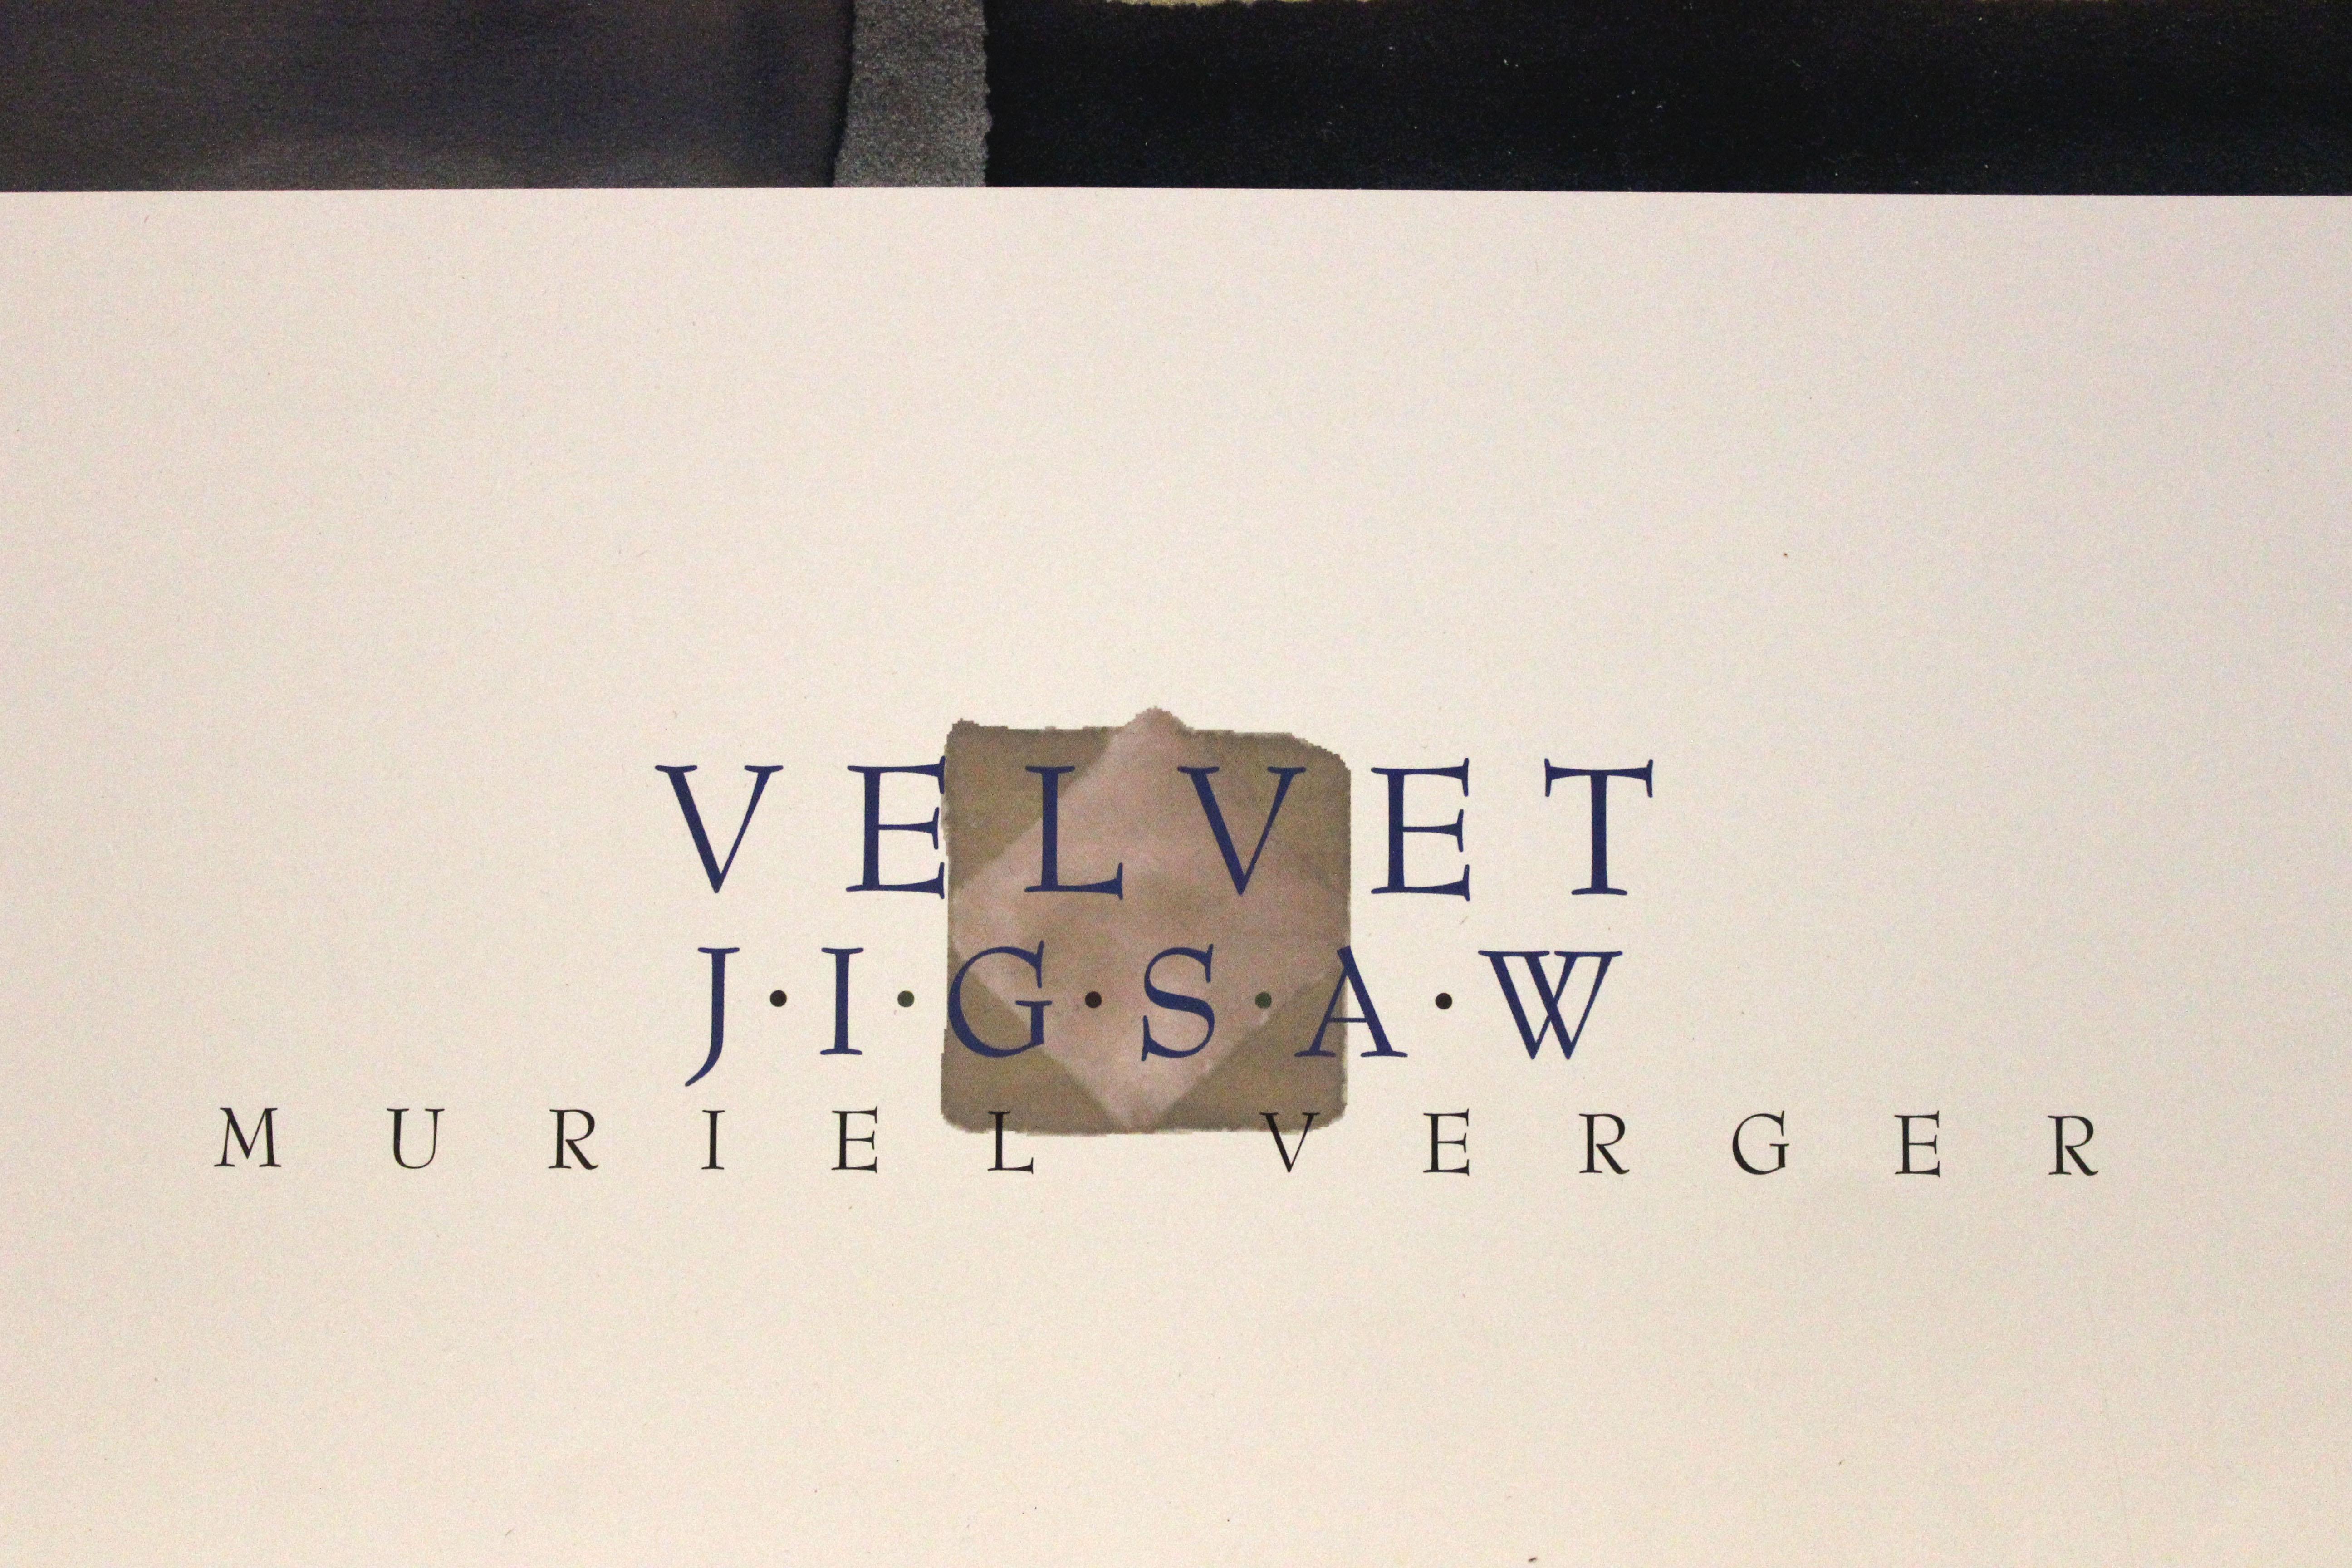 Velvet Jigsaw-Poster - Print by Muriel Verger